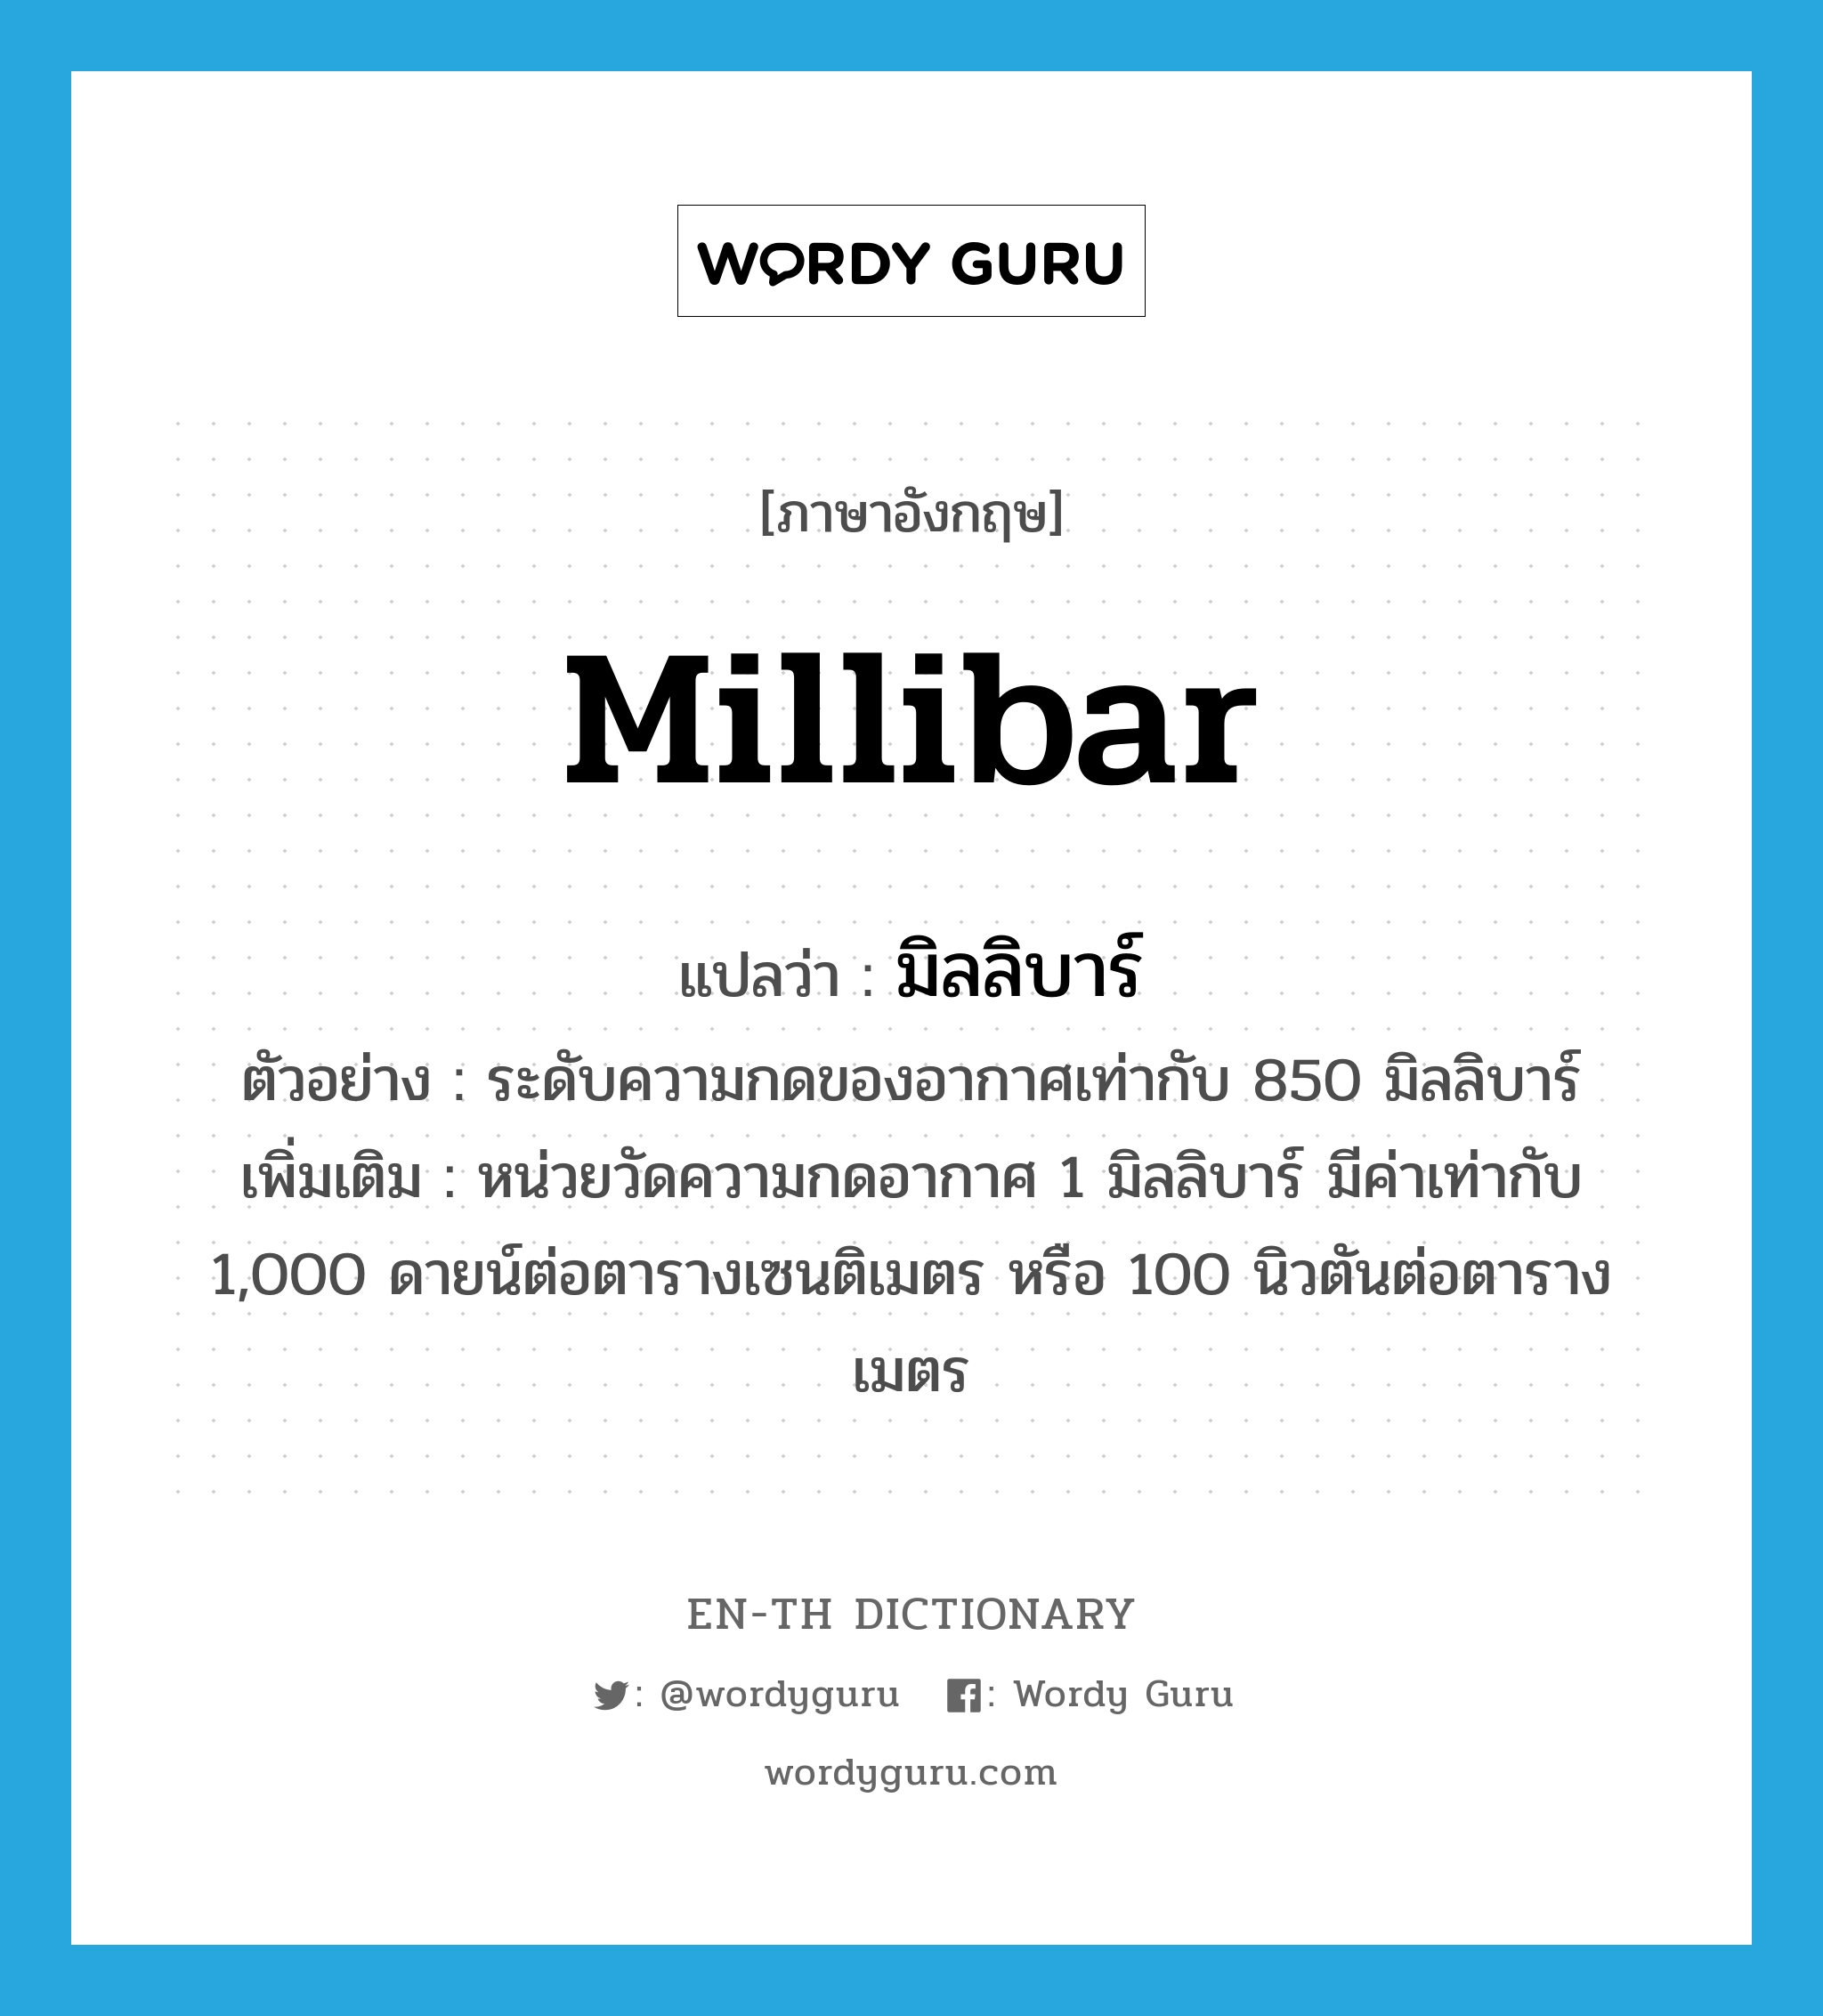 มิลลิบาร์ ภาษาอังกฤษ?, คำศัพท์ภาษาอังกฤษ มิลลิบาร์ แปลว่า millibar ประเภท CLAS ตัวอย่าง ระดับความกดของอากาศเท่ากับ 850 มิลลิบาร์ เพิ่มเติม หน่วยวัดความกดอากาศ 1 มิลลิบาร์ มีค่าเท่ากับ 1,000 ดายน์ต่อตารางเซนติเมตร หรือ 100 นิวตันต่อตารางเมตร หมวด CLAS